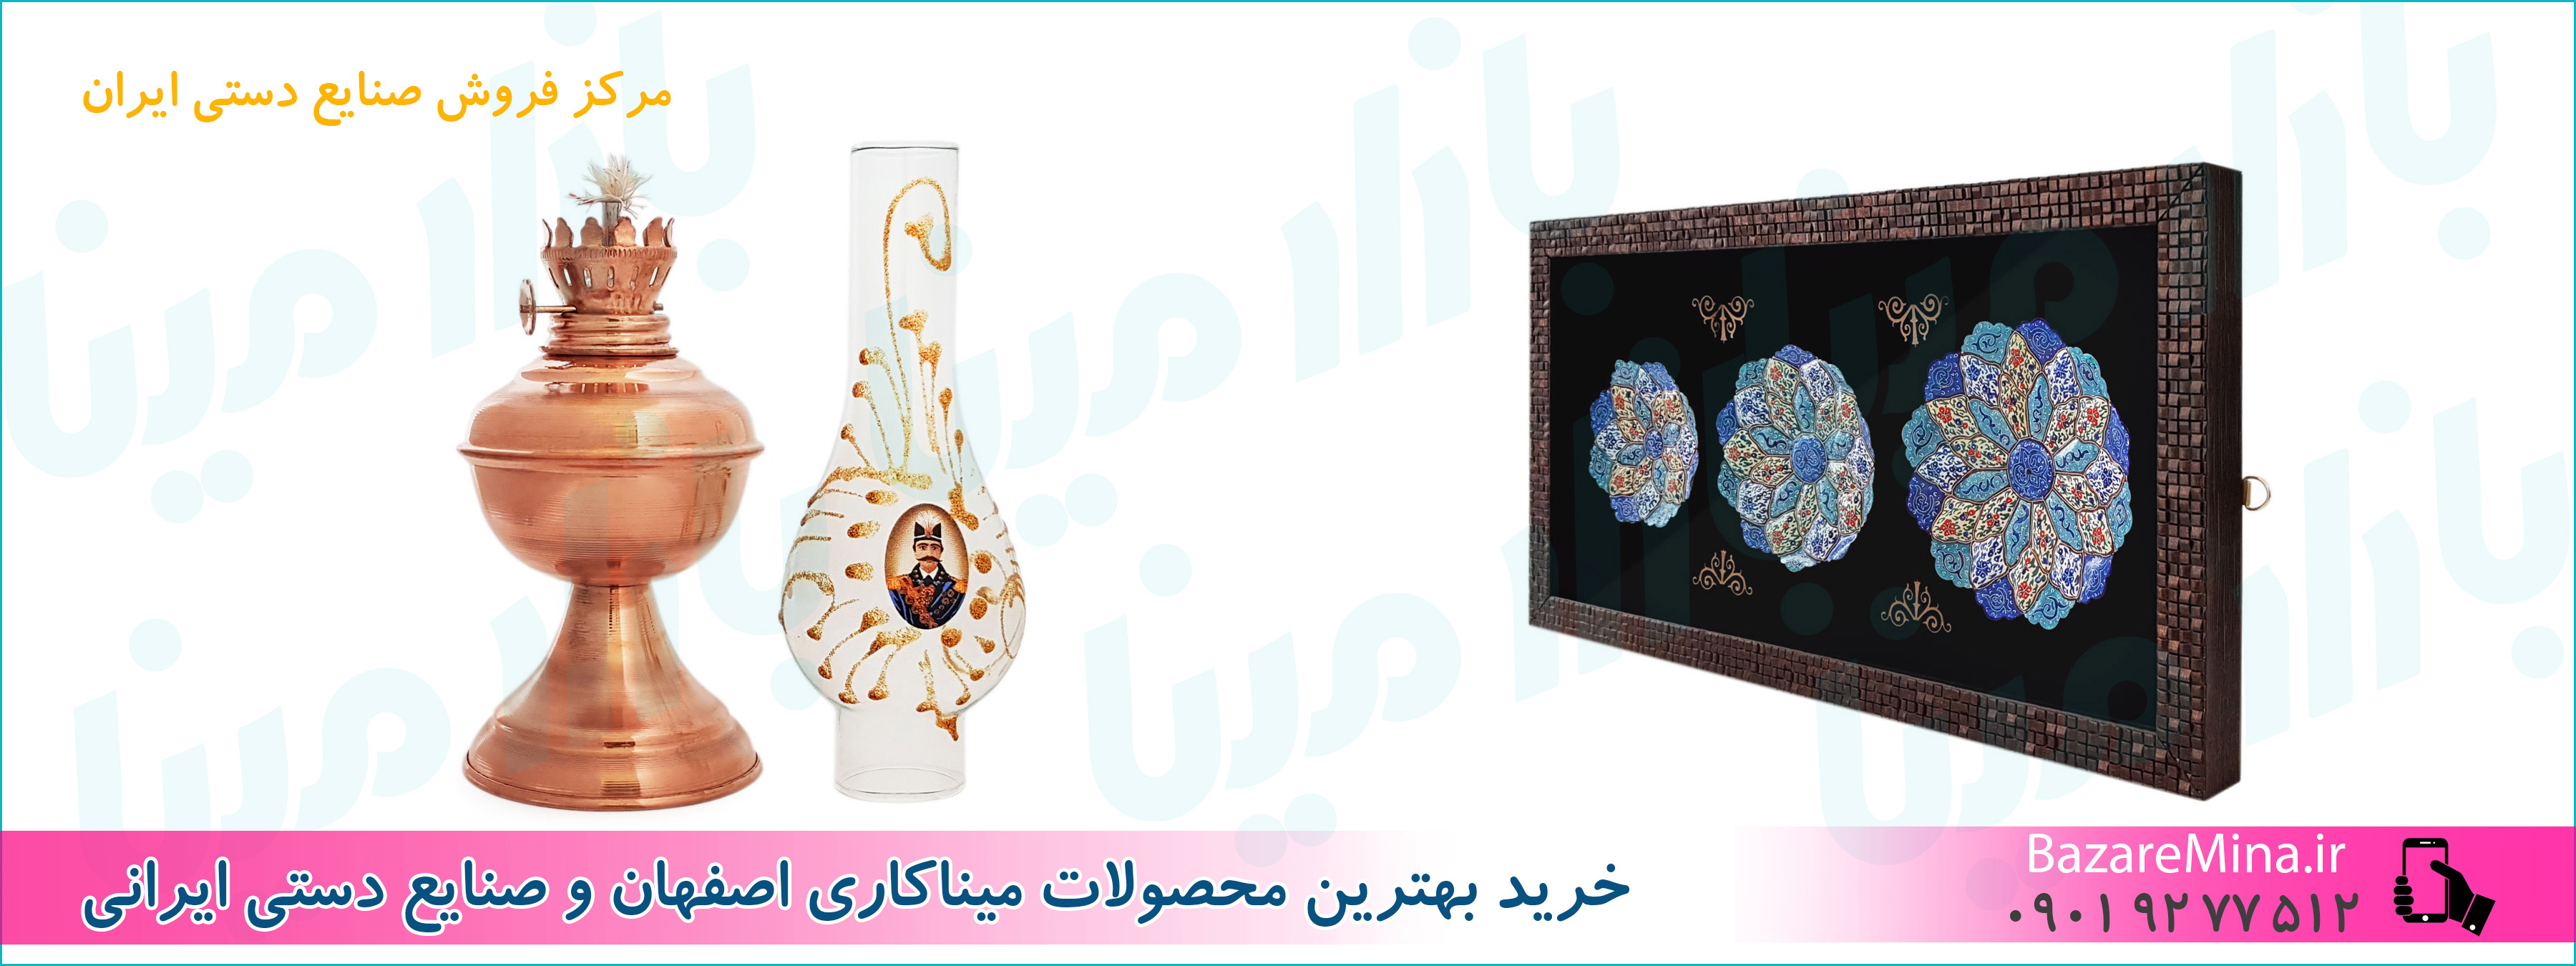 فروش صنایع دستی اصفهان در تهران